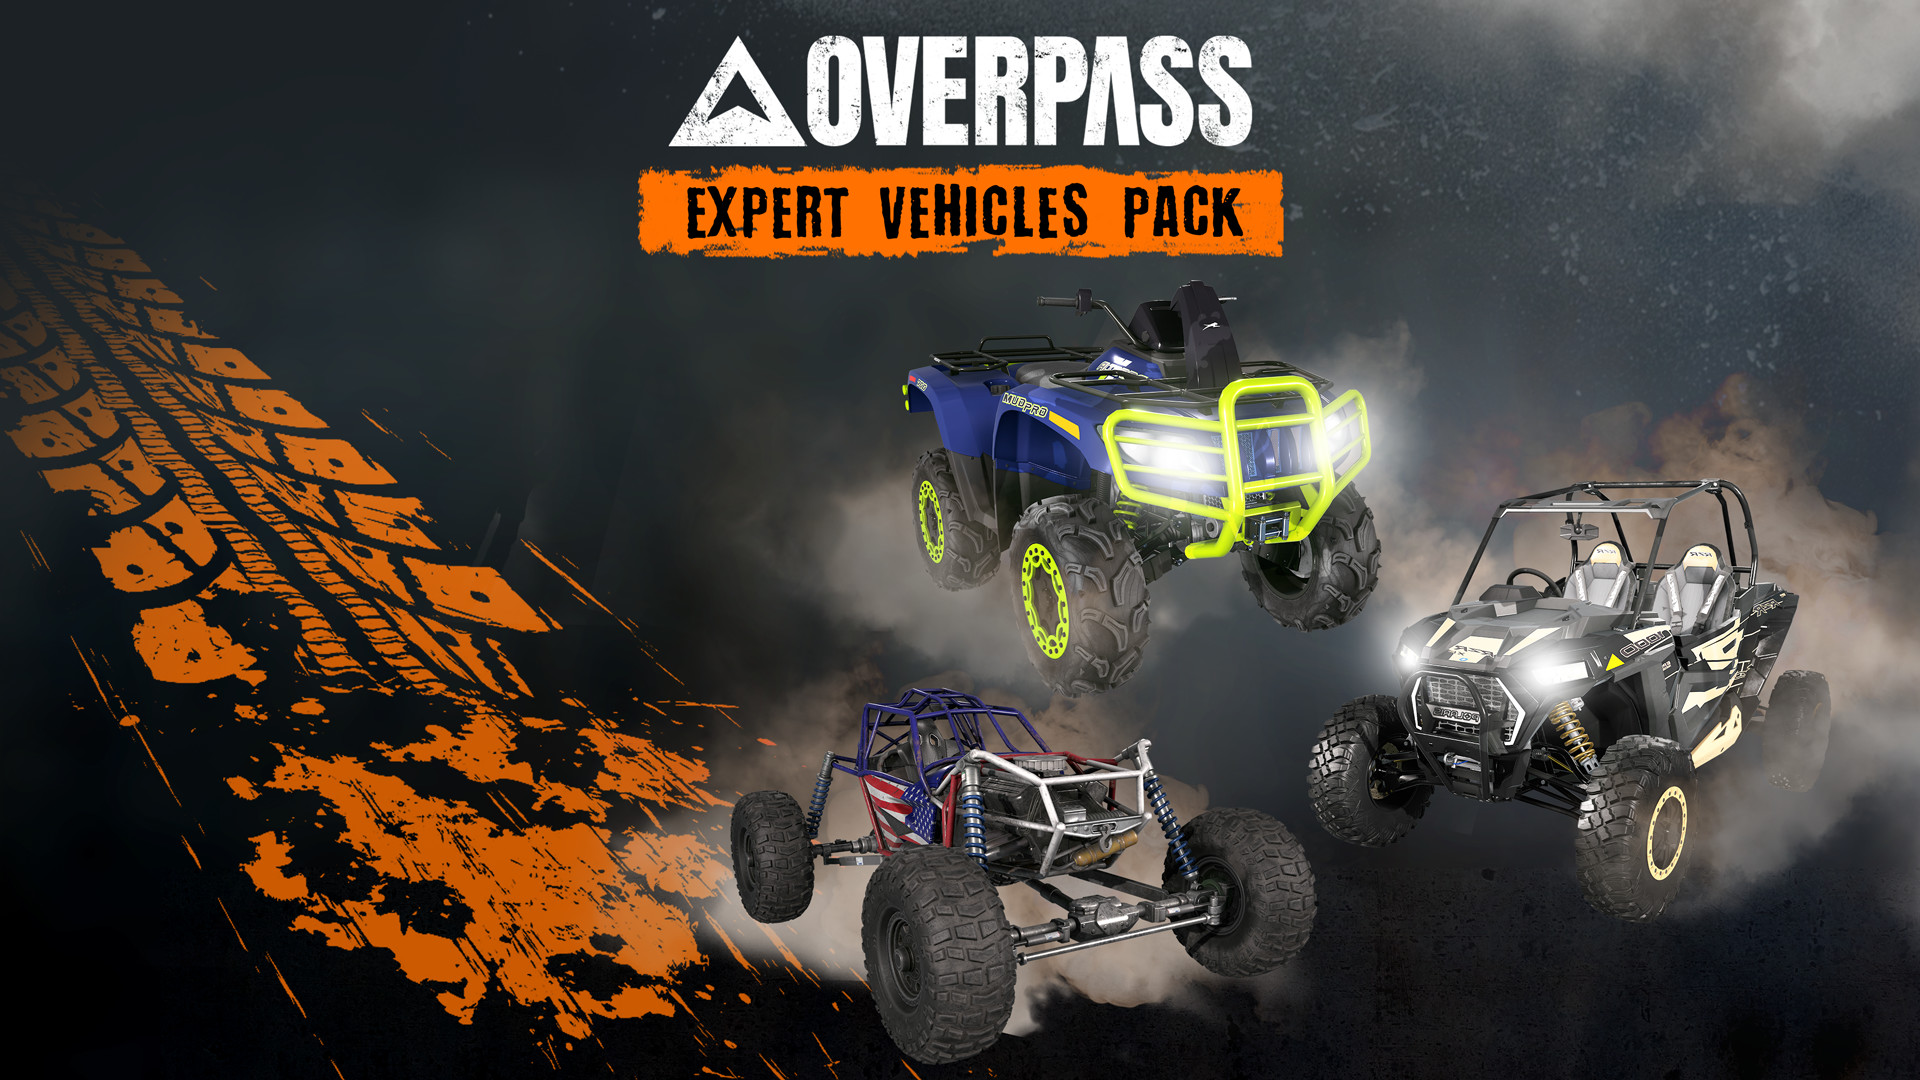 OVERPASS - Expert Vehicles Pack DLC Steam CD Key, 2.36$